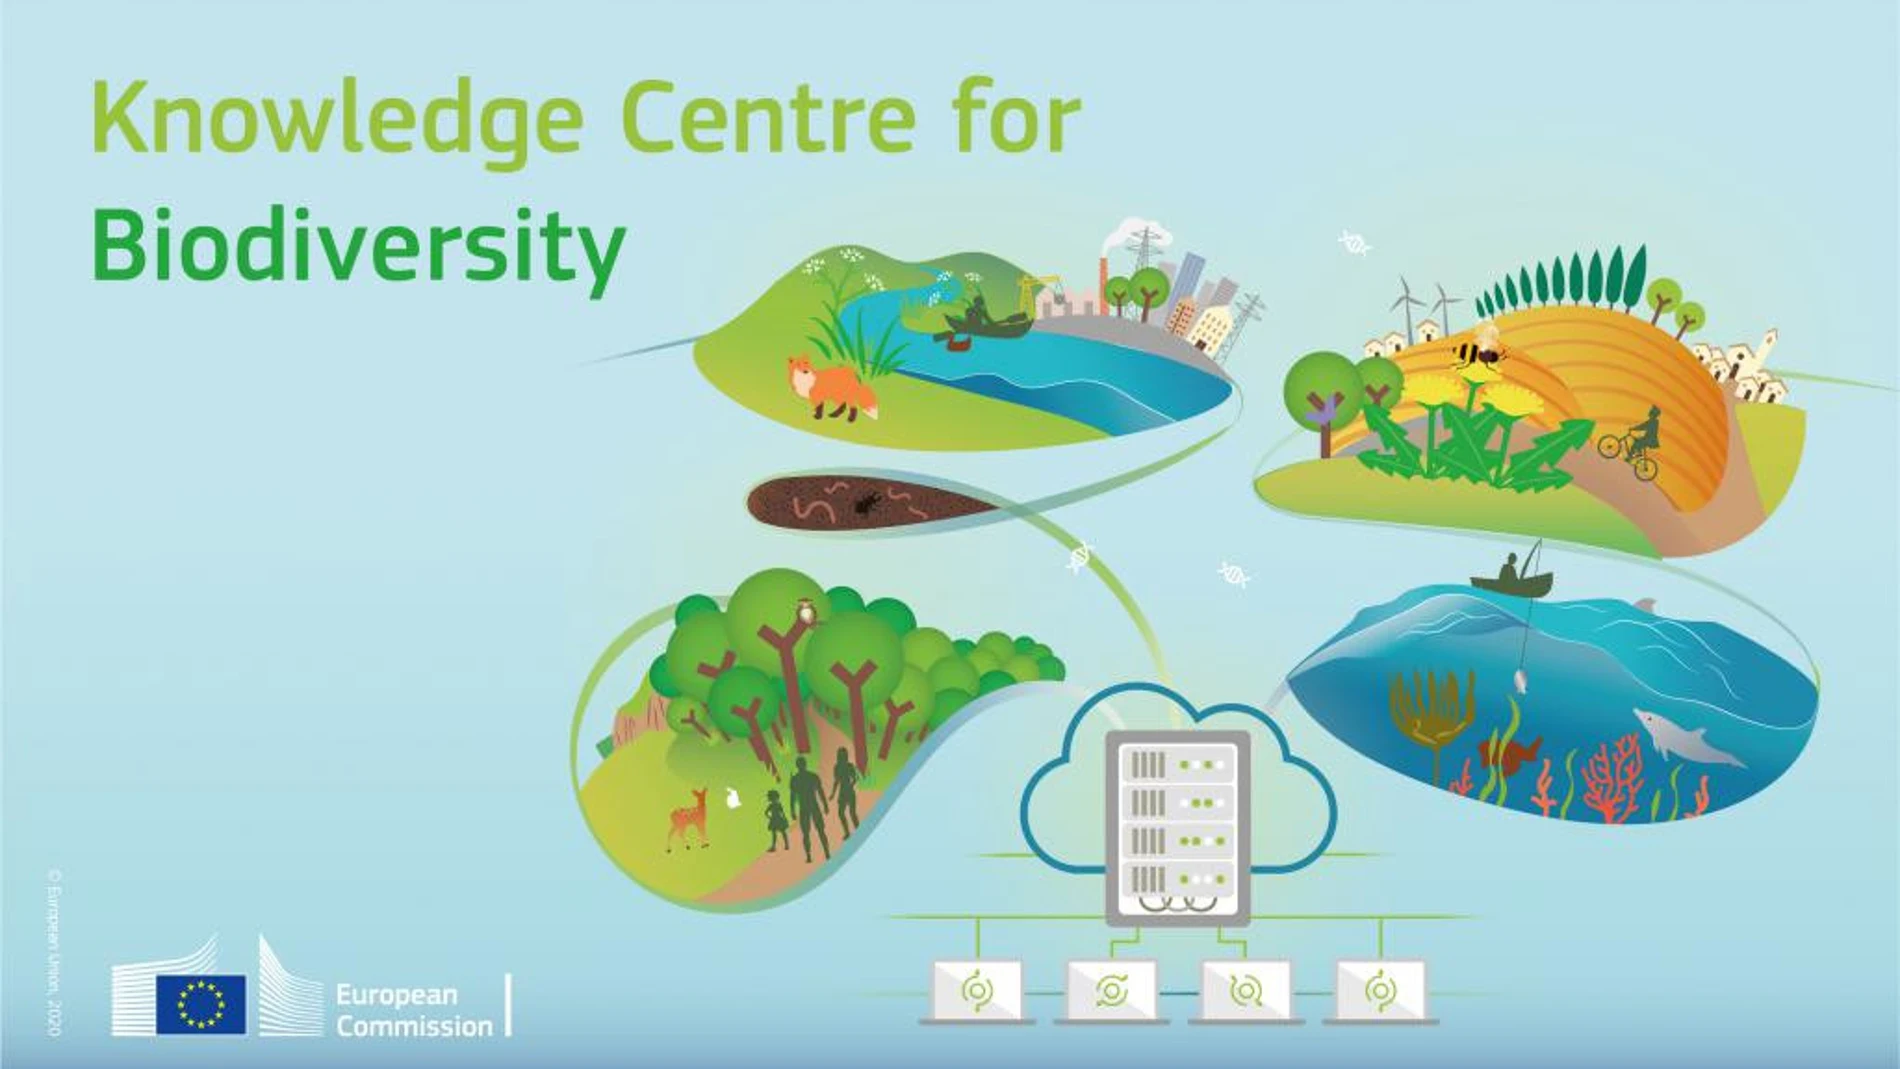 Centro de Conocimiento para la Biodiversidad impulsado por la UE